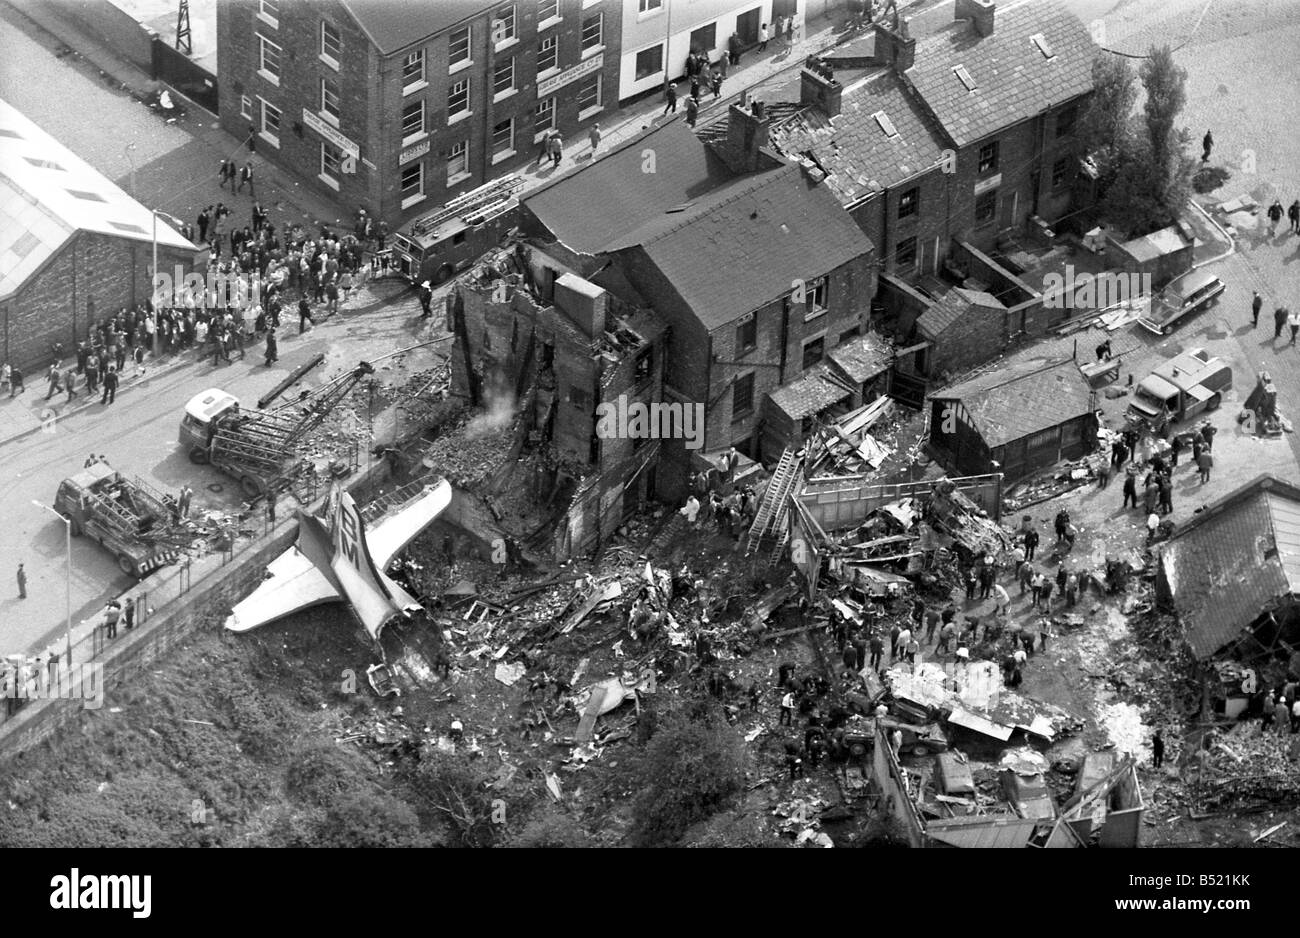 Die Stockport Luft Katastrophe Juni 1967 72 Passagiere und Besatzungsmitglieder wurden getötet, als ein Flug British Midland stürzte, während versuchend, Manchester Airport landen. Das Flugzeug fiel ein Canadair C-4 Argonaut G-ALHG aus dem Himmel als Motorschaden zu einem Verlust der Kontrolle führte. Die Passagieren stand kaum eine Chance des Überlebens, so ist es bemerkenswert, dass 12 Überlebenden gab, gab es keine Todesfälle auf dem Boden. Crash-Opfer starb entsetzlich, nachdem er von den einstürzenden sitzen auf der Ebene wie die Ausbreitung von Feuer gefangen. Die Retter sah mit Entsetzen, als sie sahen Menschen sterben Stockfoto